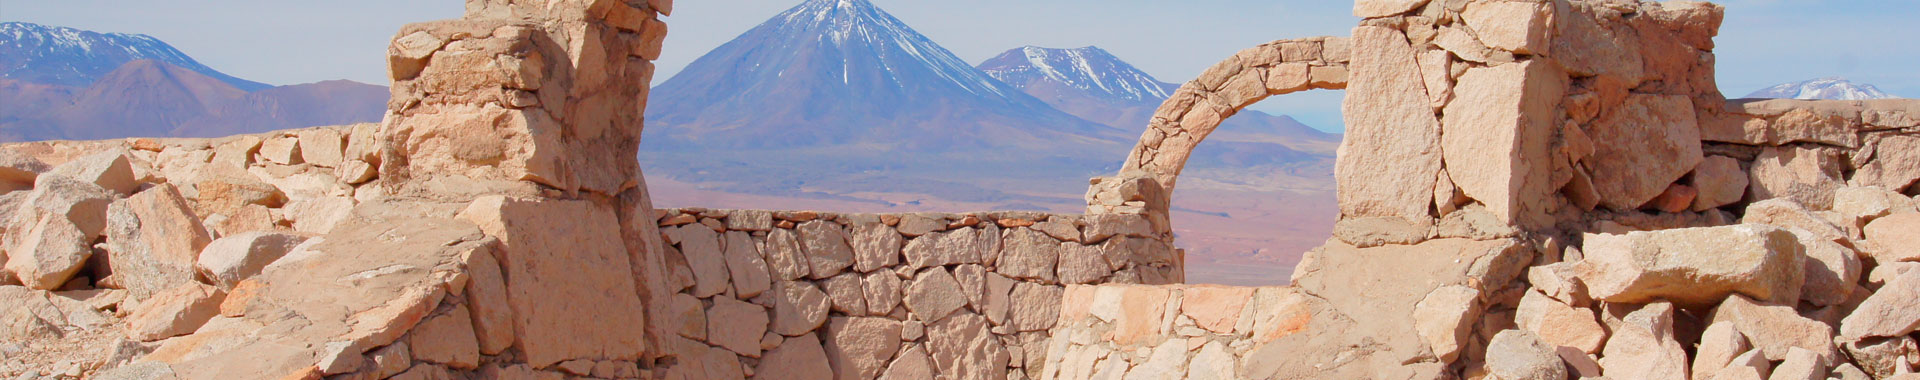 Chile - Atacama - Paseos - Arqueologia